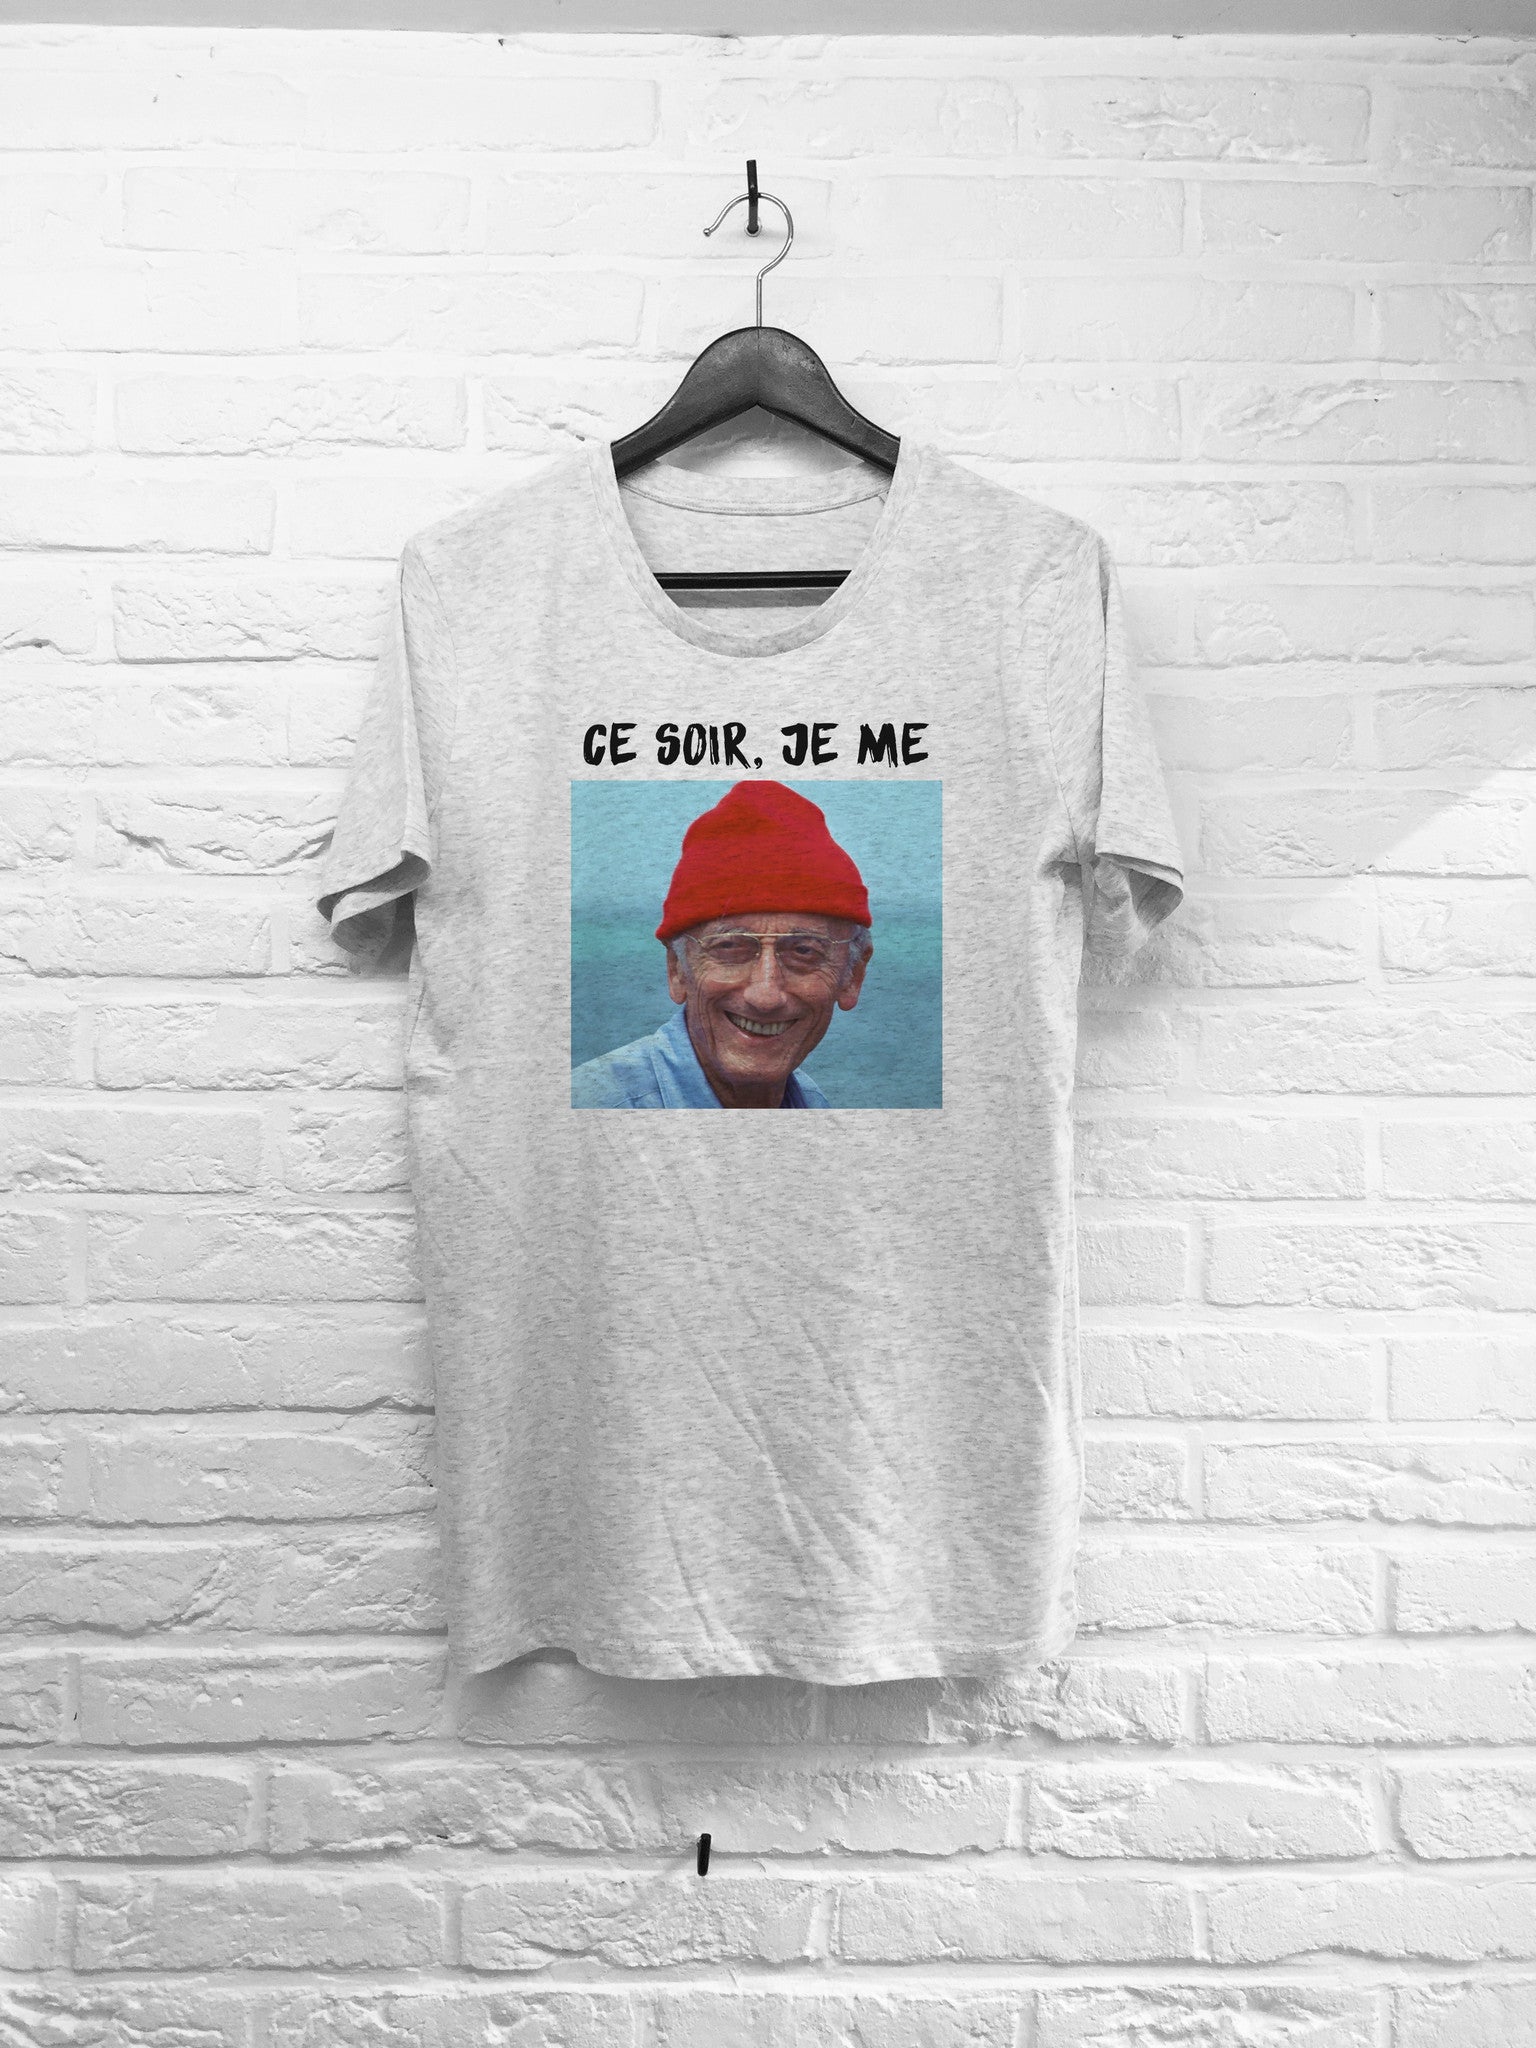 Couche tôt Cousteau-T shirt-Atelier Amelot